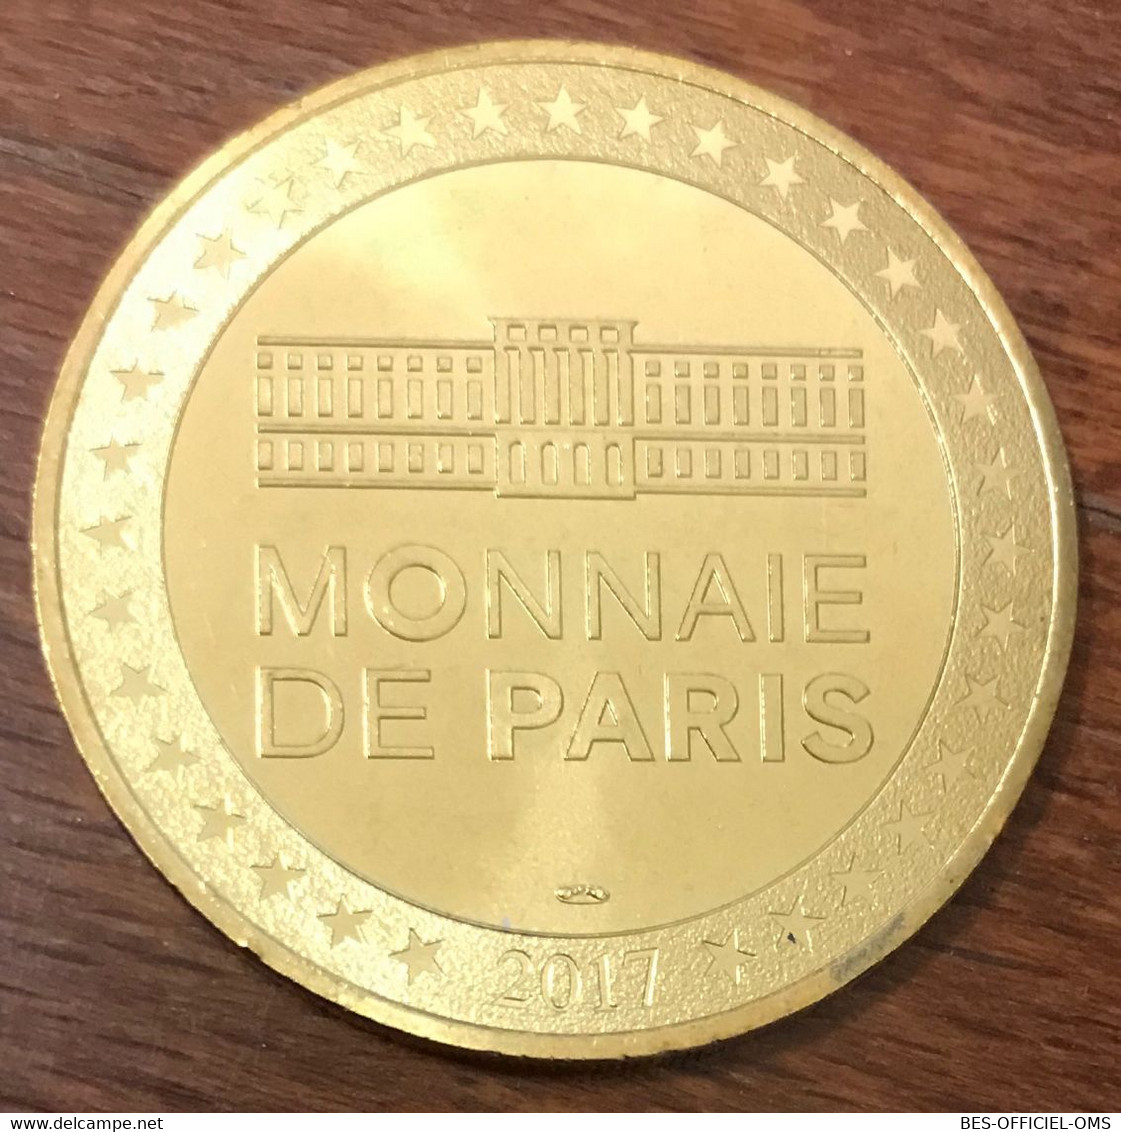 31 TOULOUSE LE CAPITOLE MDP 2017 MÉDAILLE SOUVENIR MONNAIE DE PARIS JETON TOURISTIQUE TOKENS MEDALS COINS - 2017